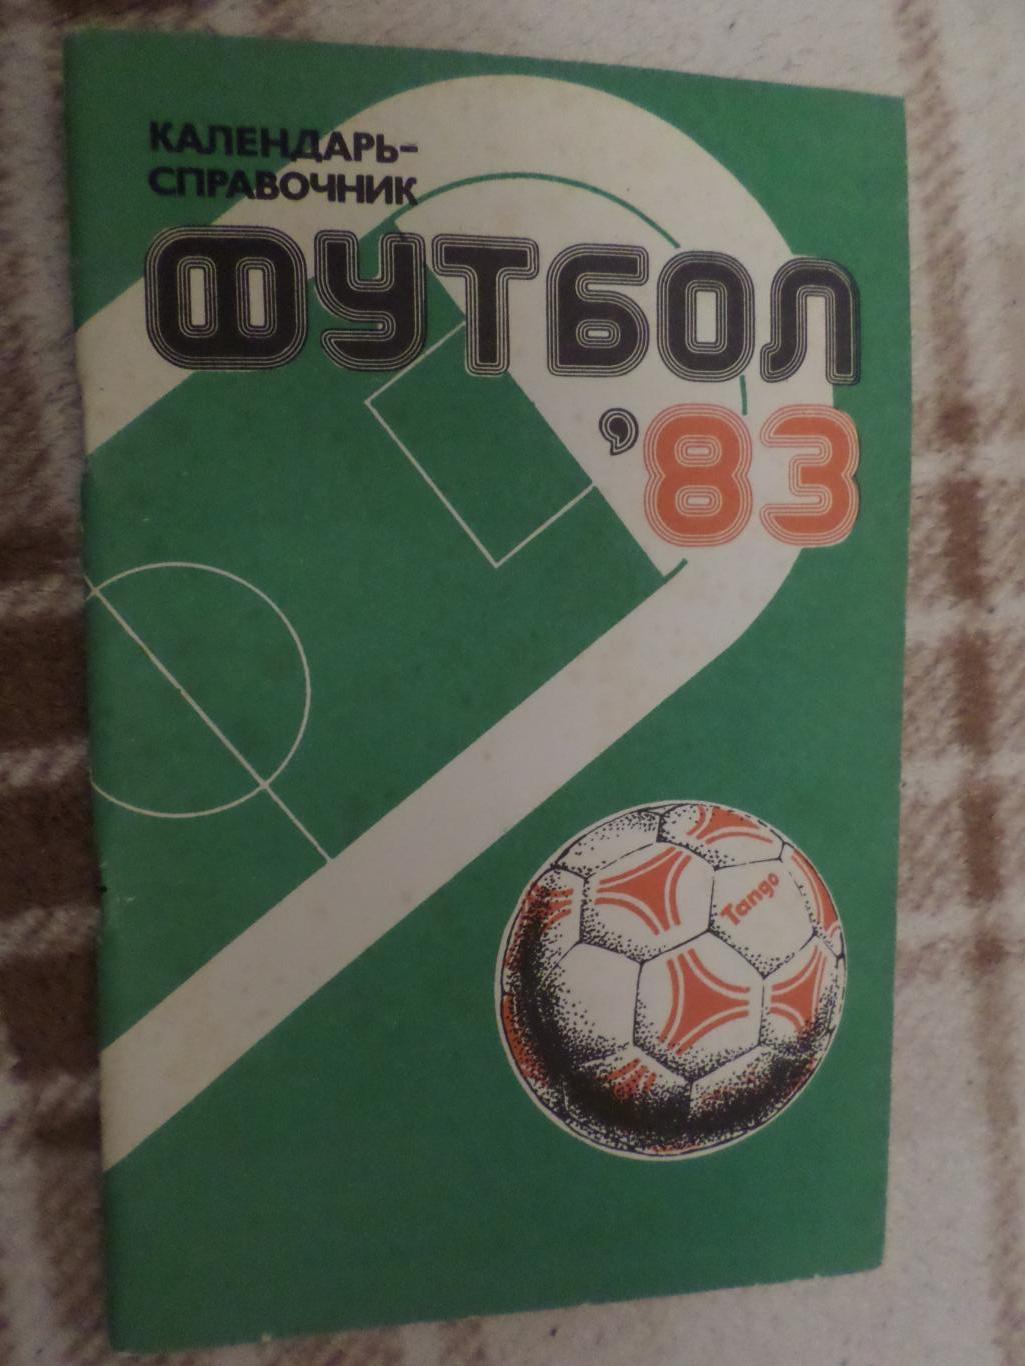 справочник Футбол 1983 г, г. Харьков